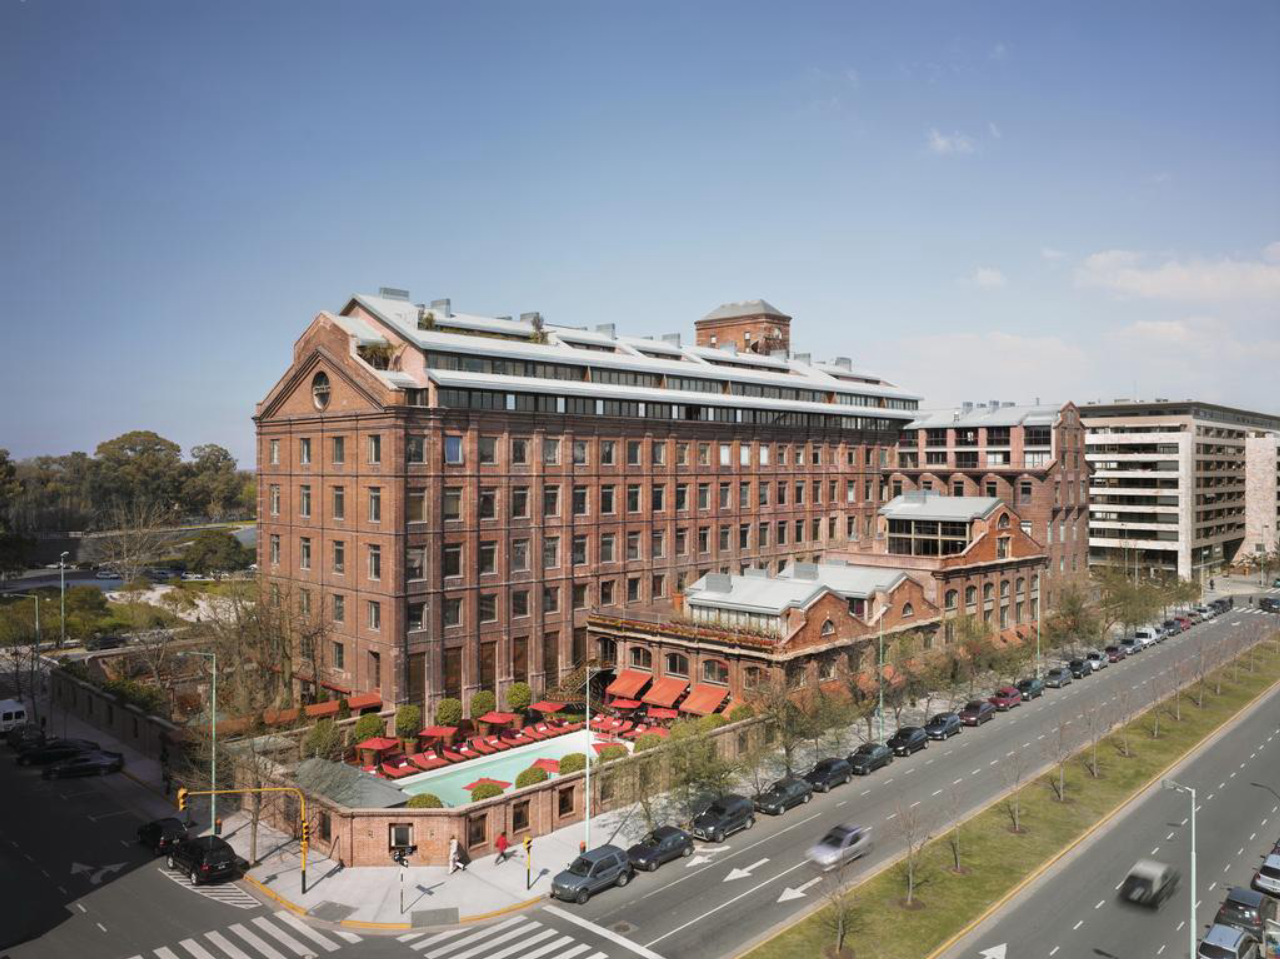 Hotel Faena, exemplo de bom aproveitamento do patrimônio industrial do Puerto Madero, em Buenos Aires. Foto: Divulgação